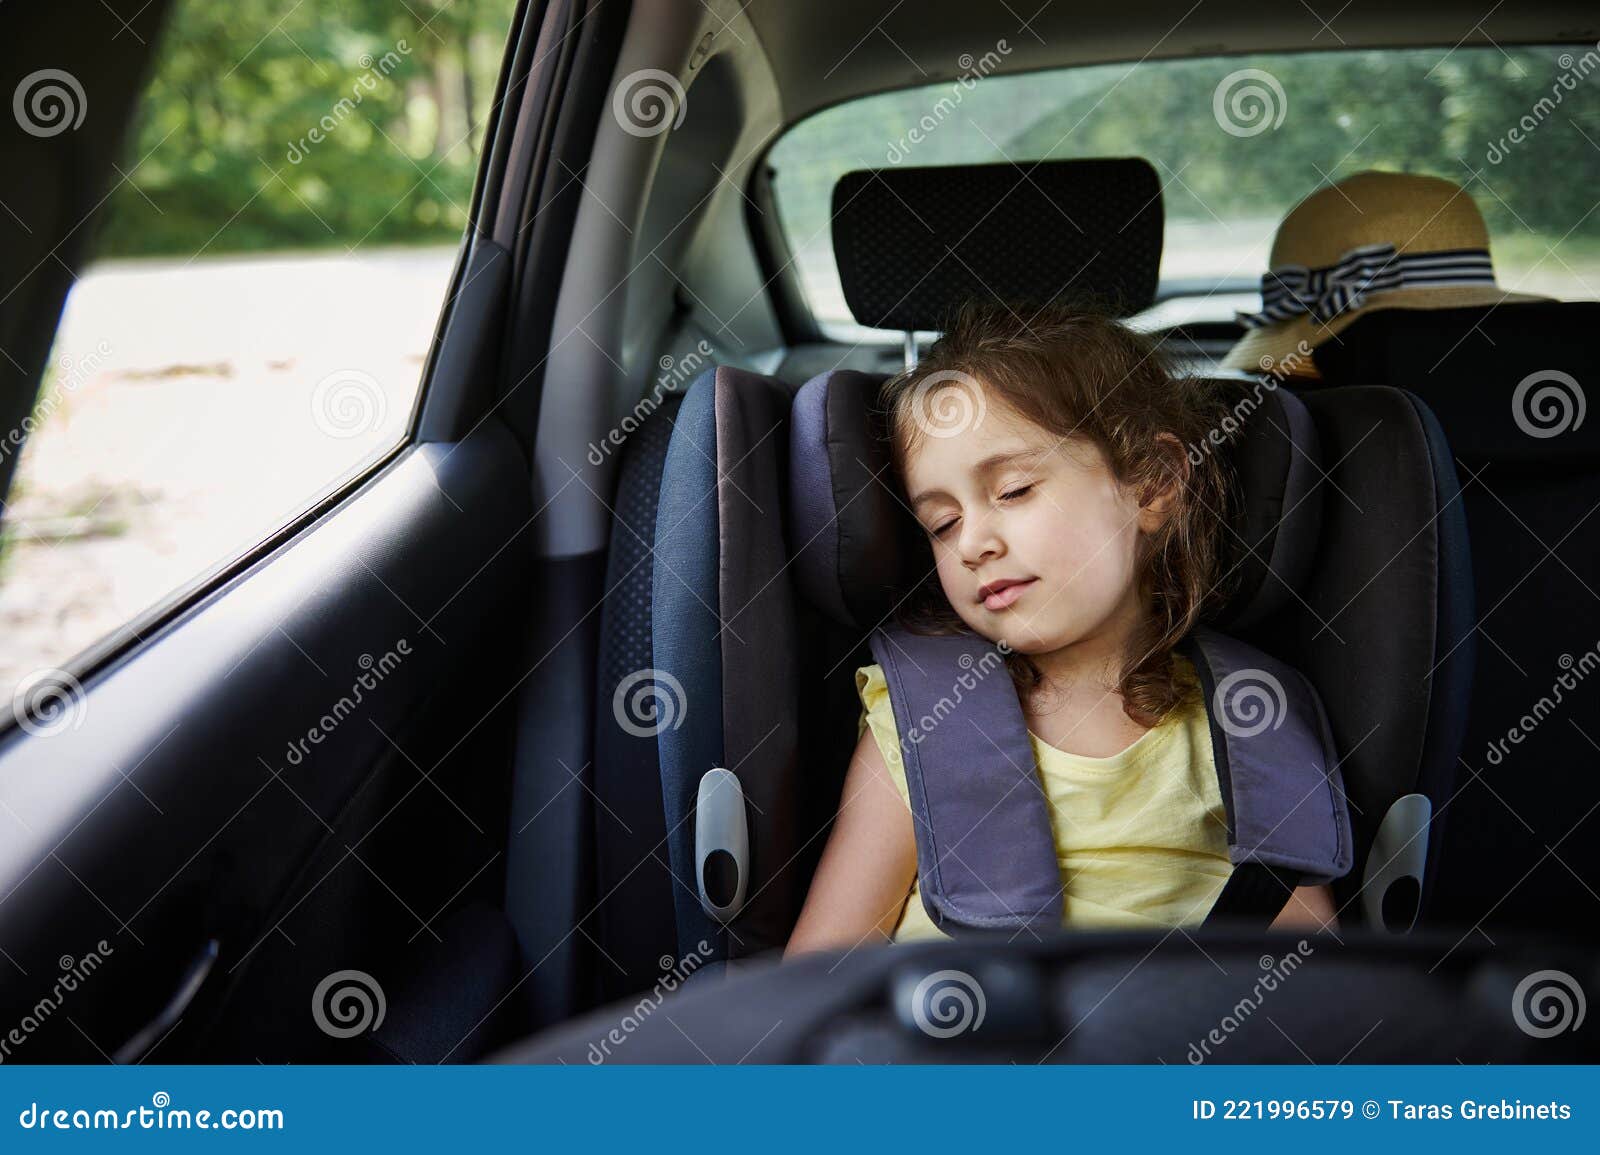 Veilig Verkeer Van Kinderen in De Auto. Klein Meisje Slaapt Een Boosterstoel De Auto. Kinderveiligheidsstoel Stock Afbeelding - Image of vastmaken: 221996579